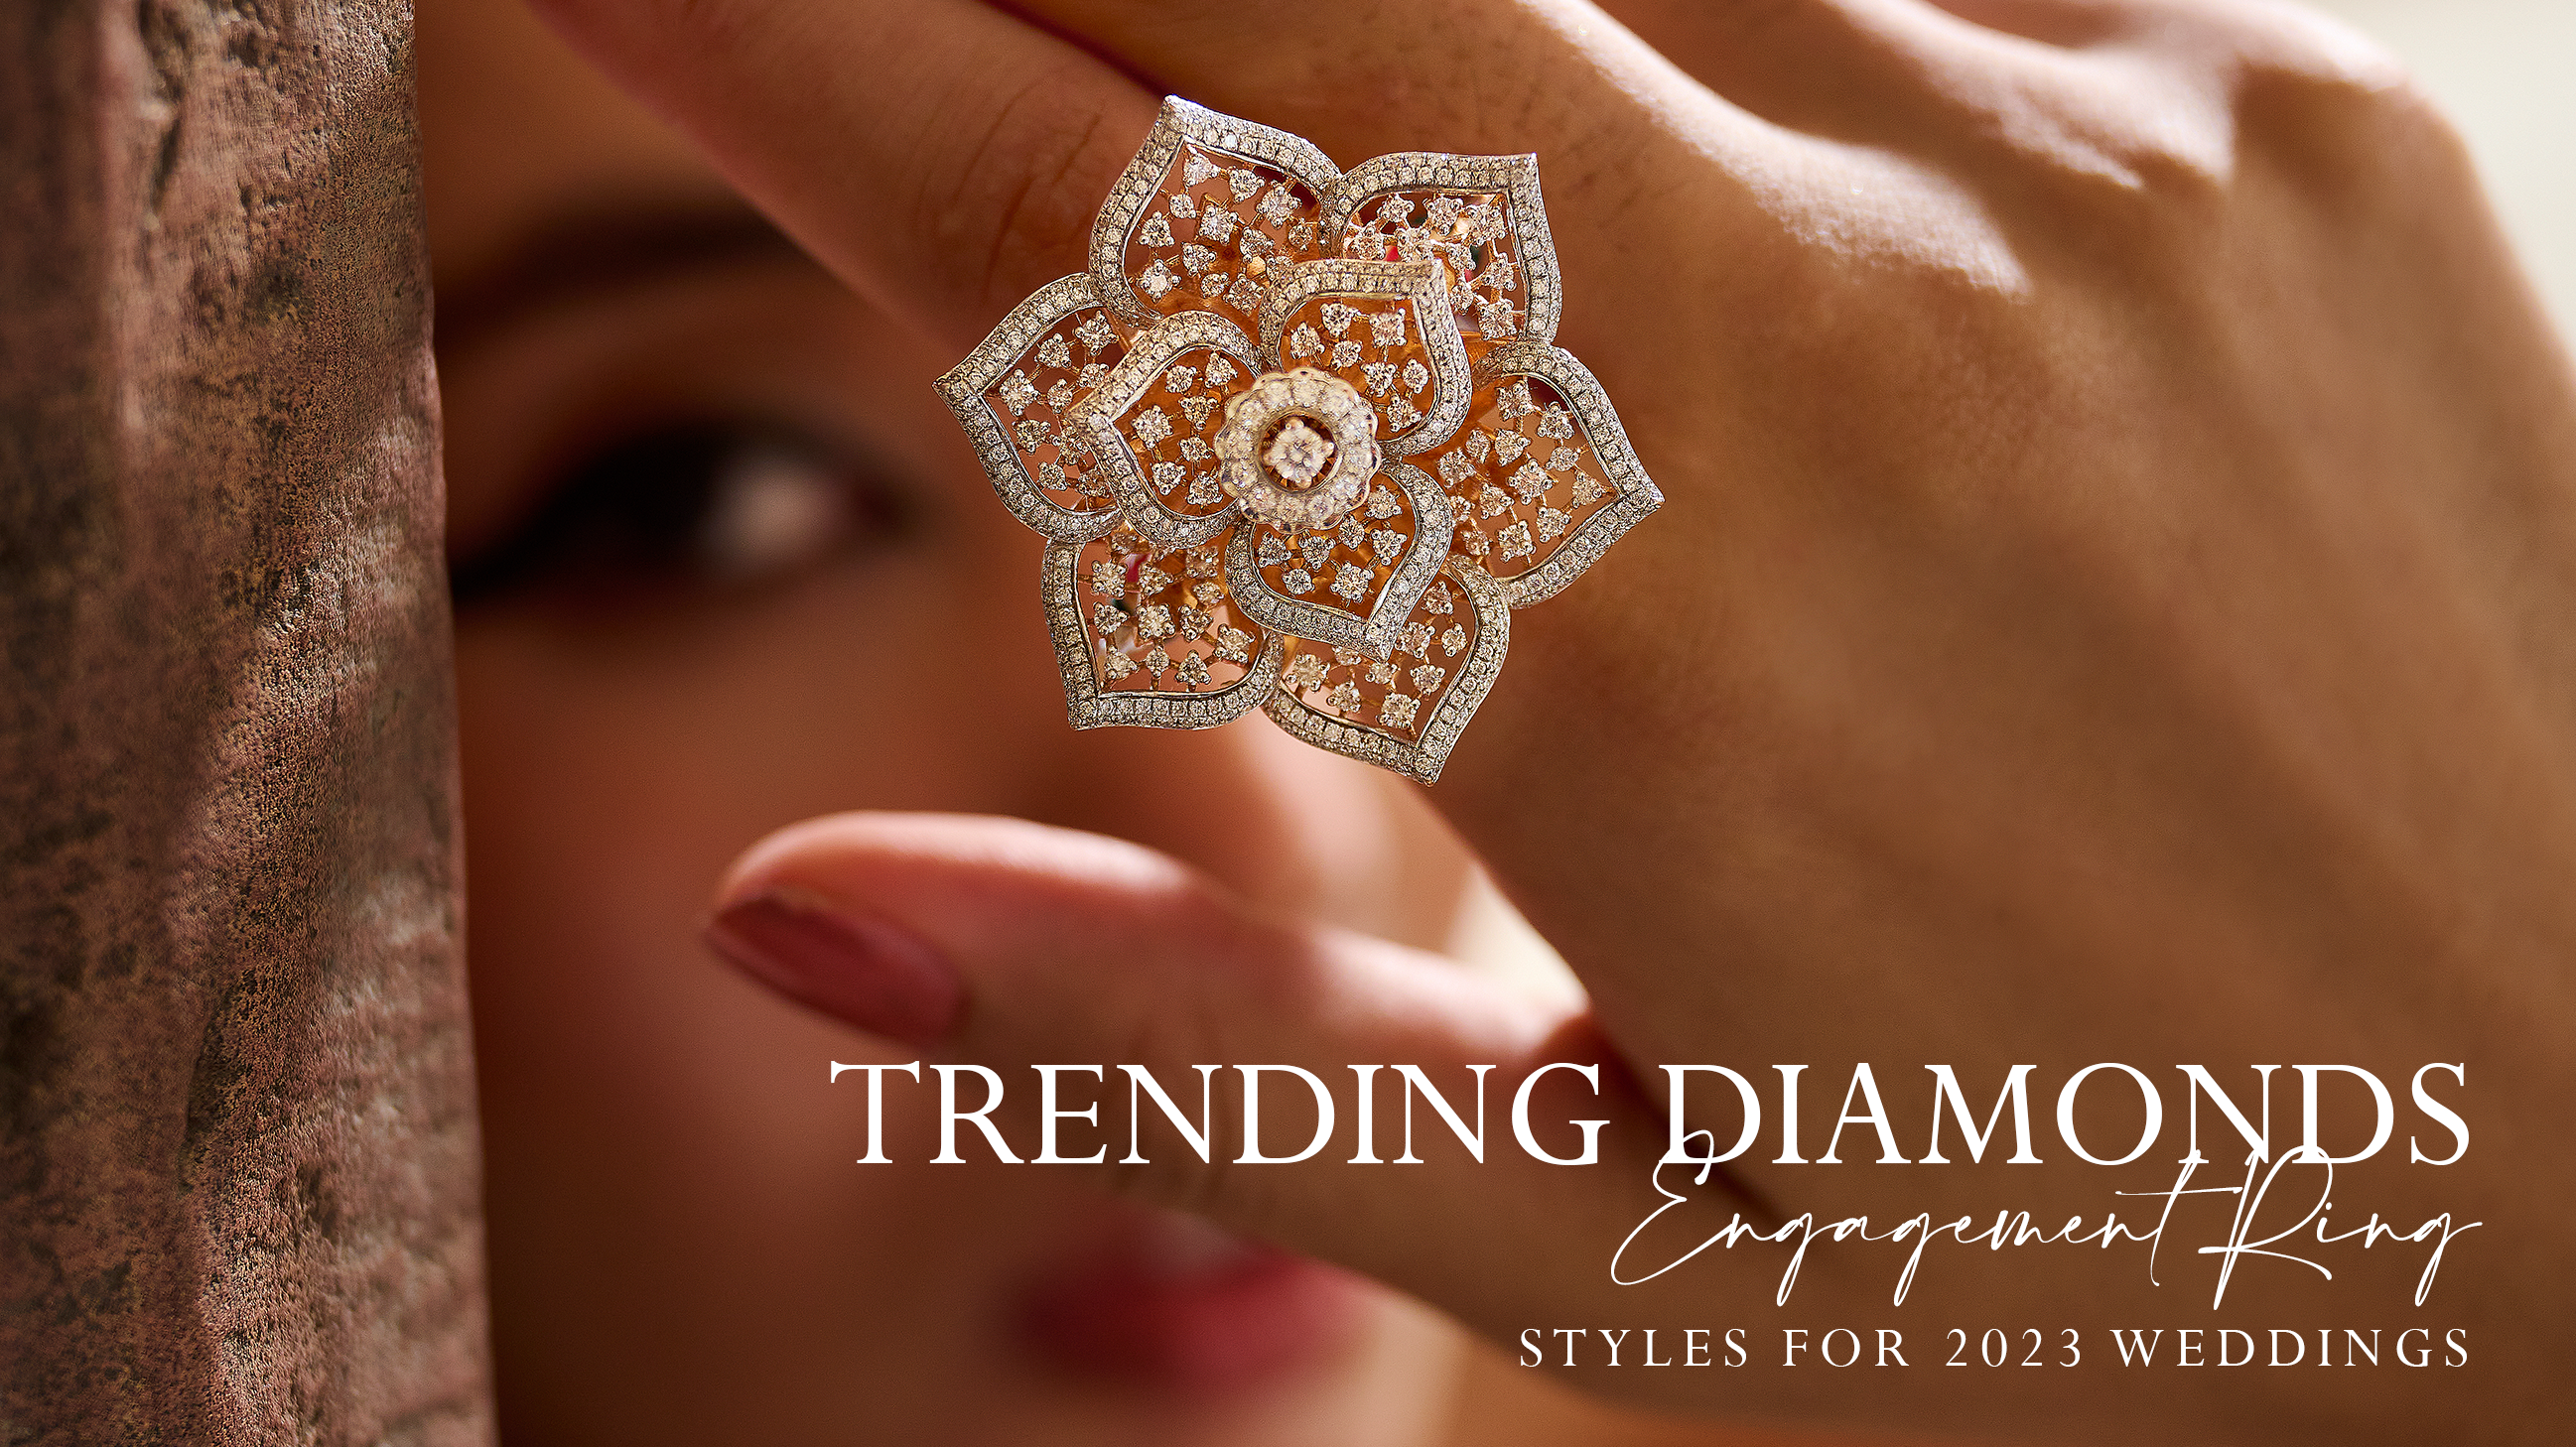 Trending Diamond Engagement Ring Styles for 2023 Weddings